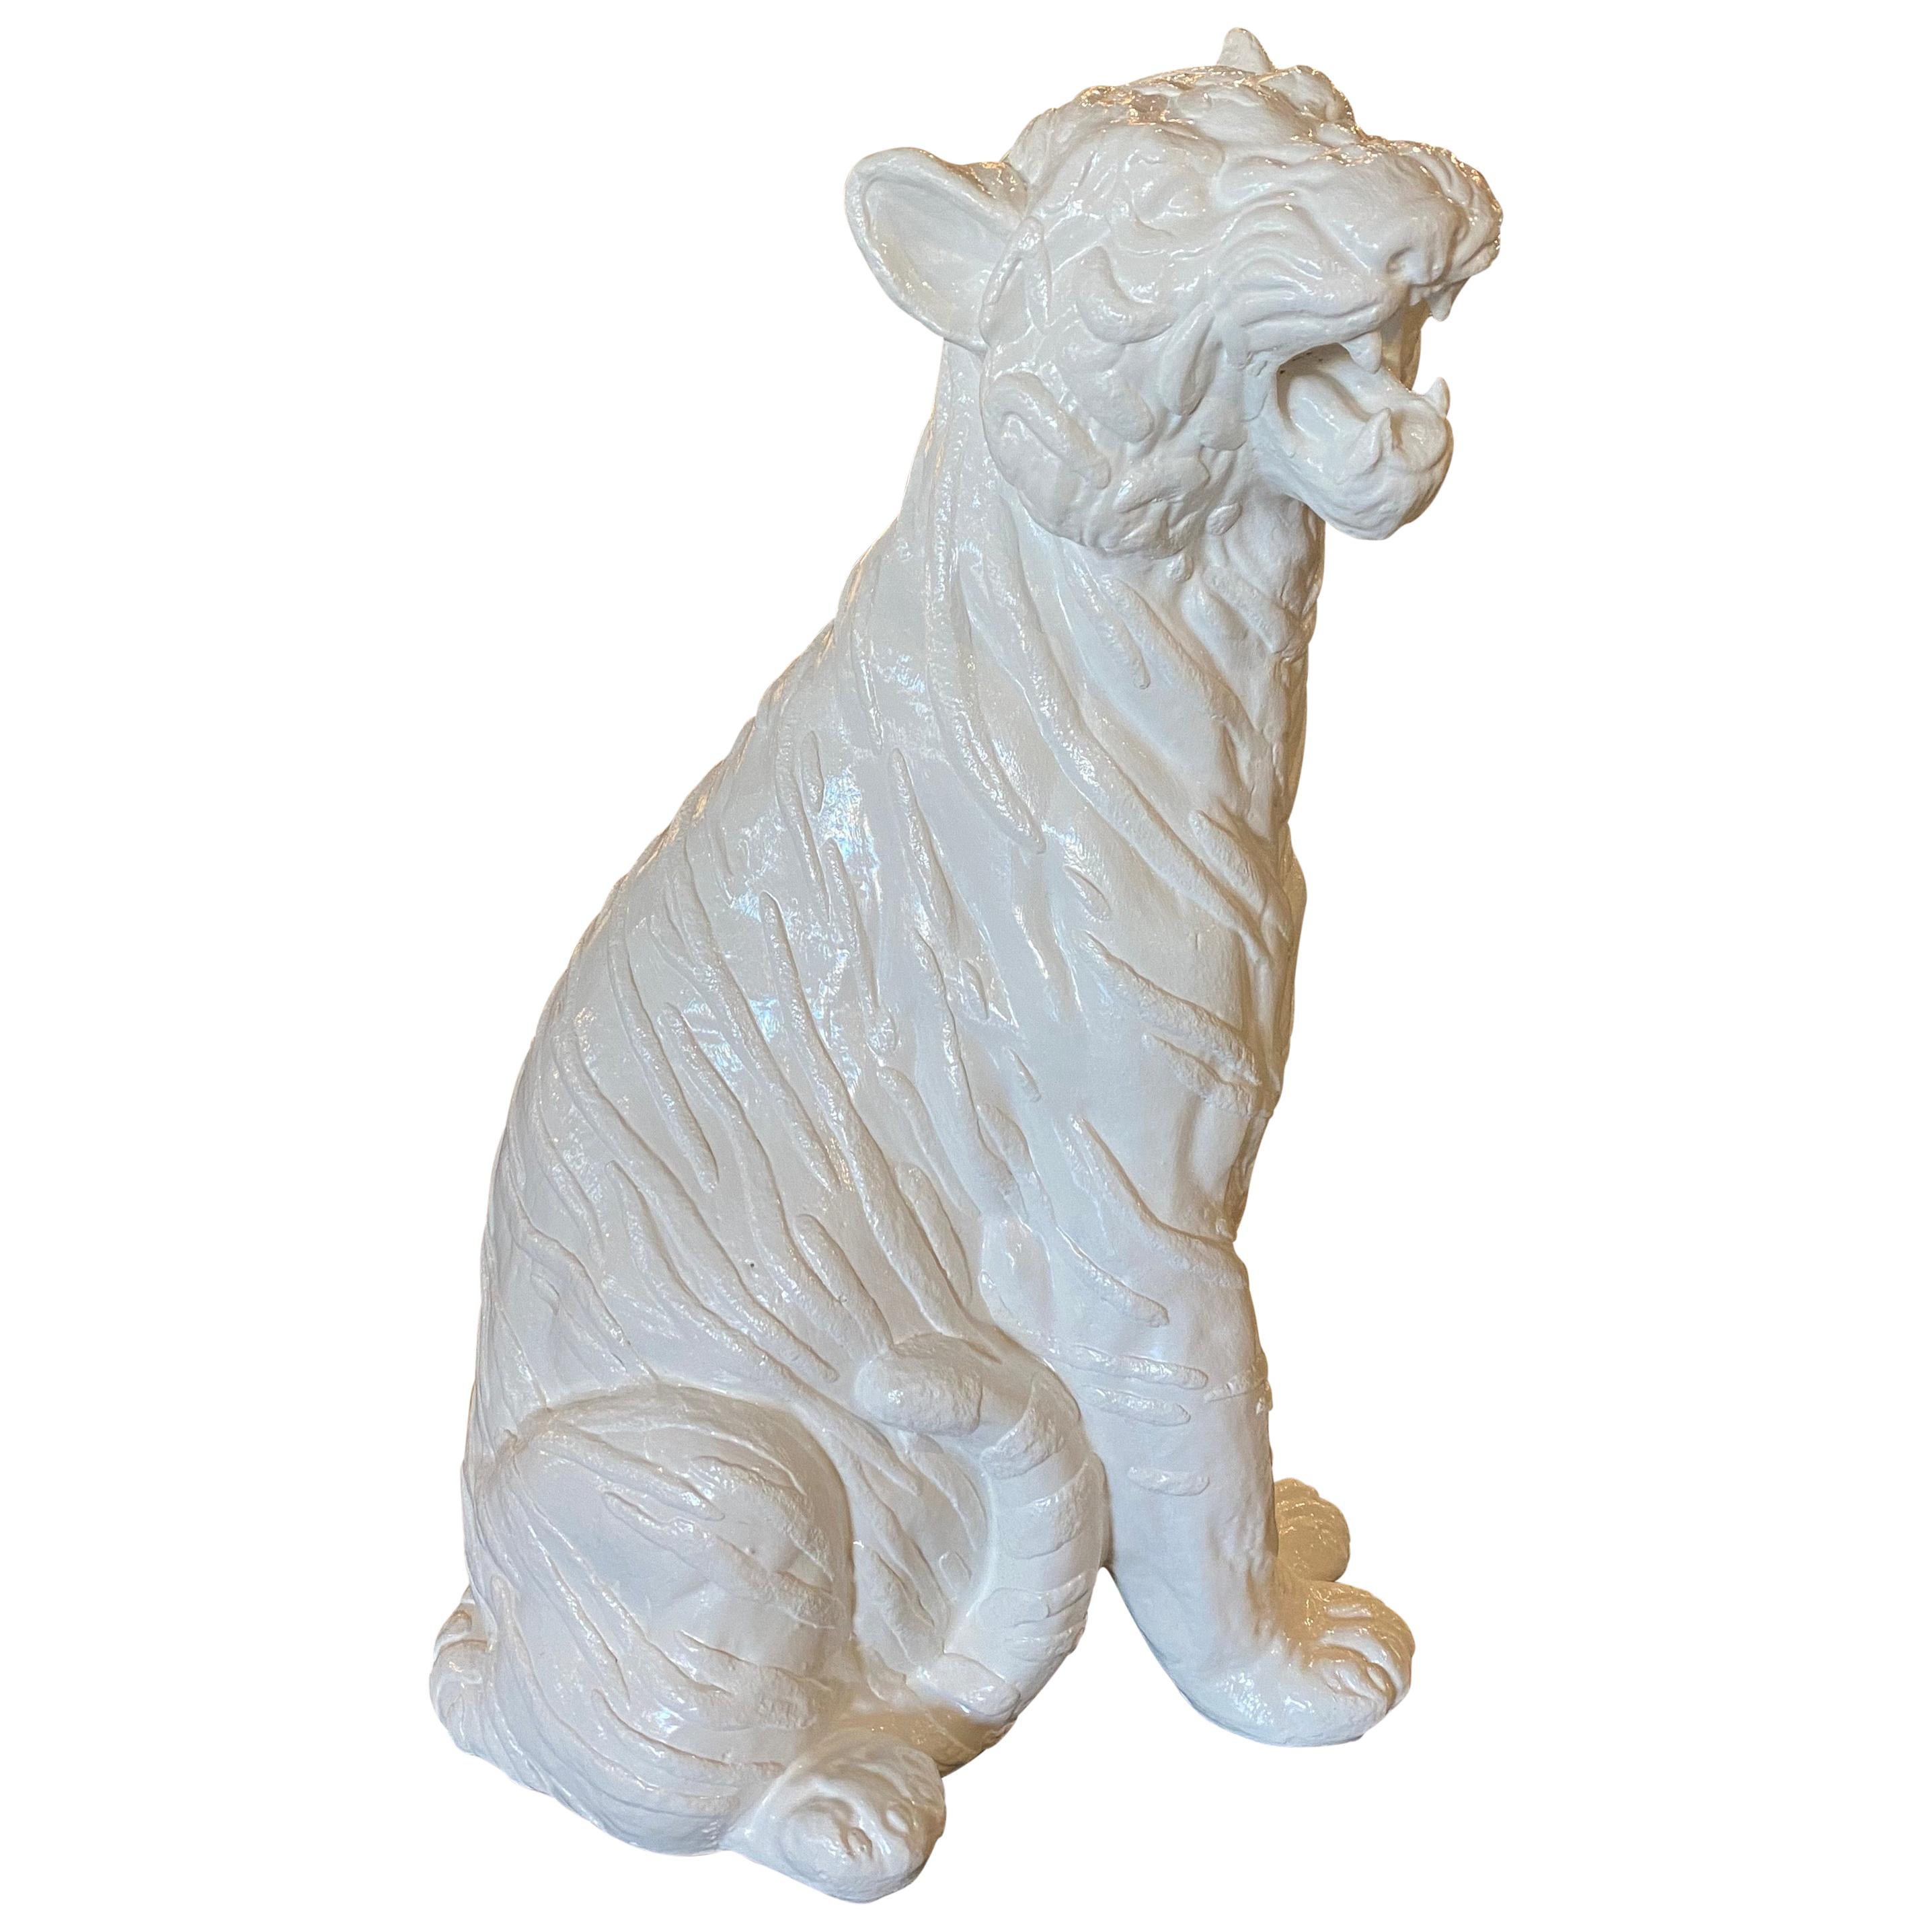 Vintage Modern Plaster White Lacquered Large Sitting Tiger Cat Statue Italian (Statua di gatto tigrato)